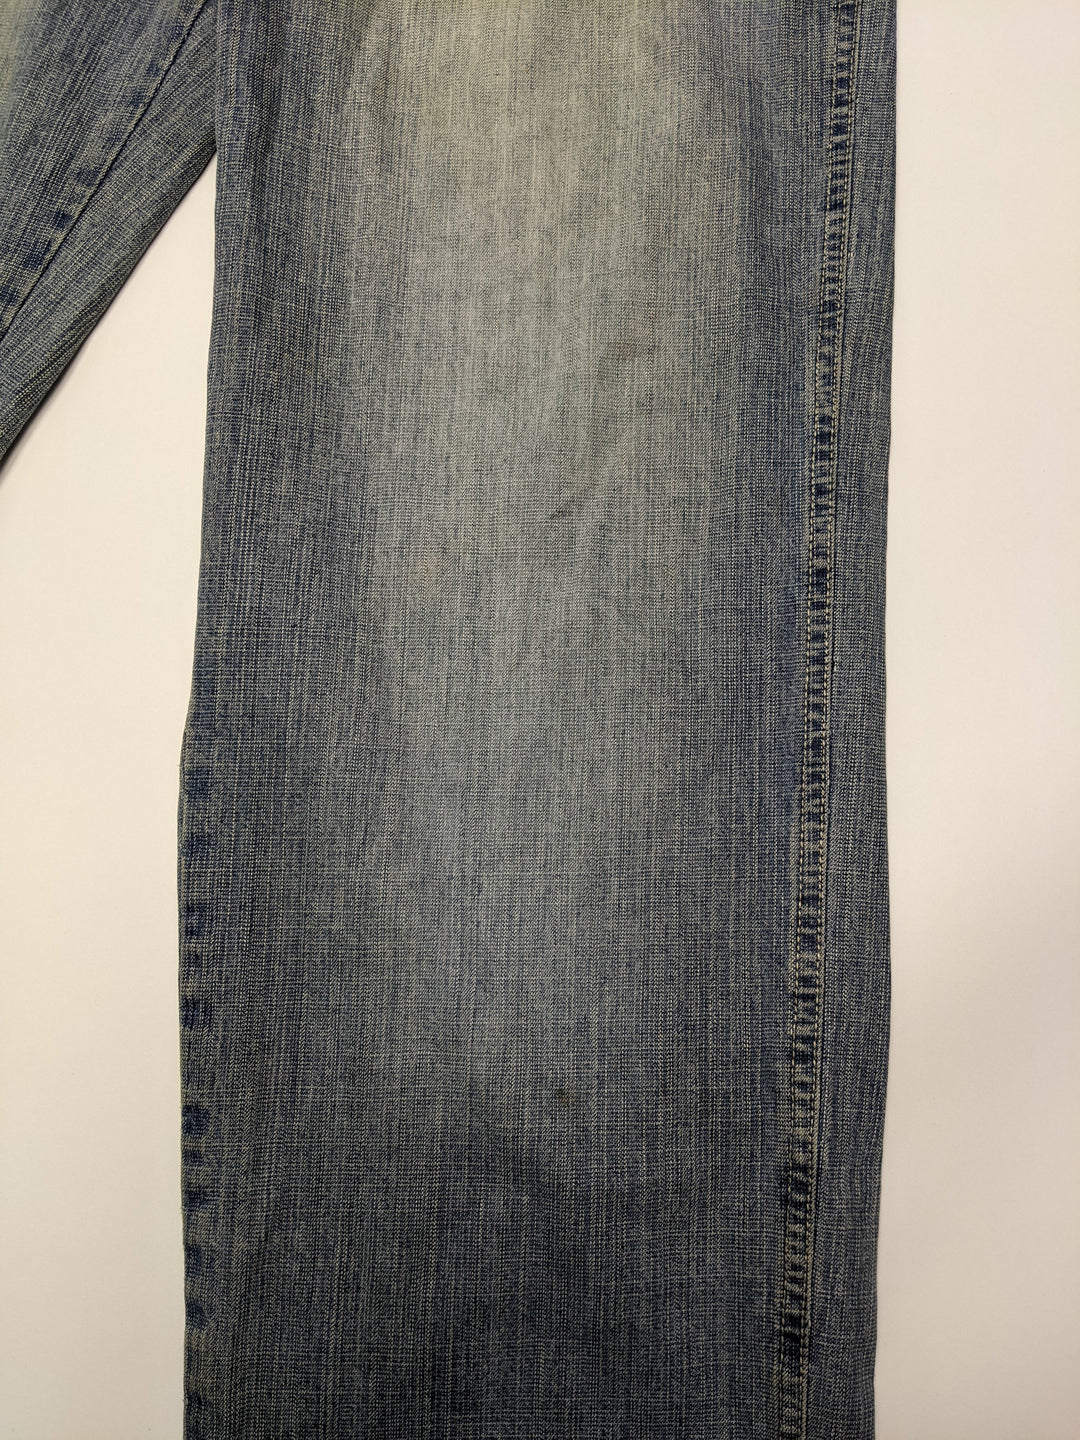 South Pole Denim Jeans 1 pc 1 lb B0202200 - Raghouse